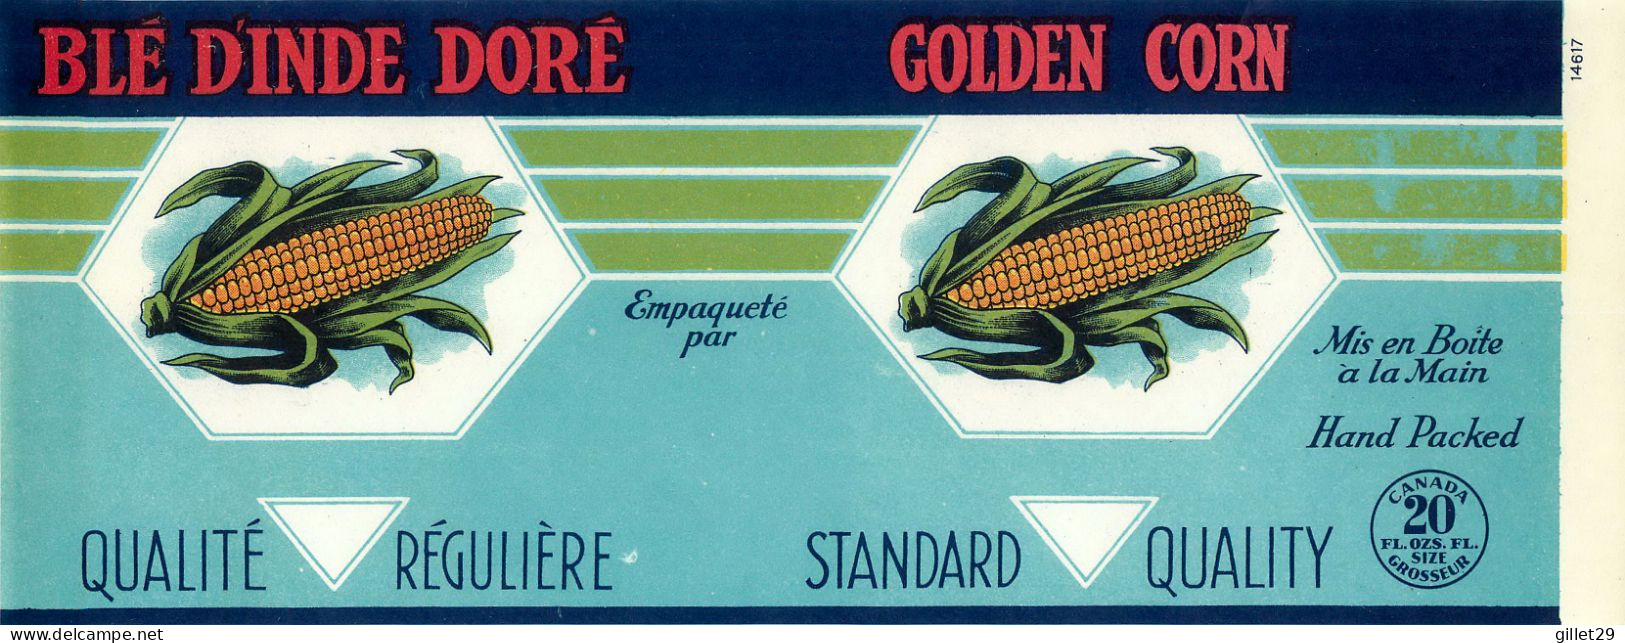 ÉTIQUETTES - BLÉ D'INDE DORÉ - GOLDEN CORN - 20 OZS CANADA - DIMENSION 11 X 27 Cm - - Obst Und Gemüse